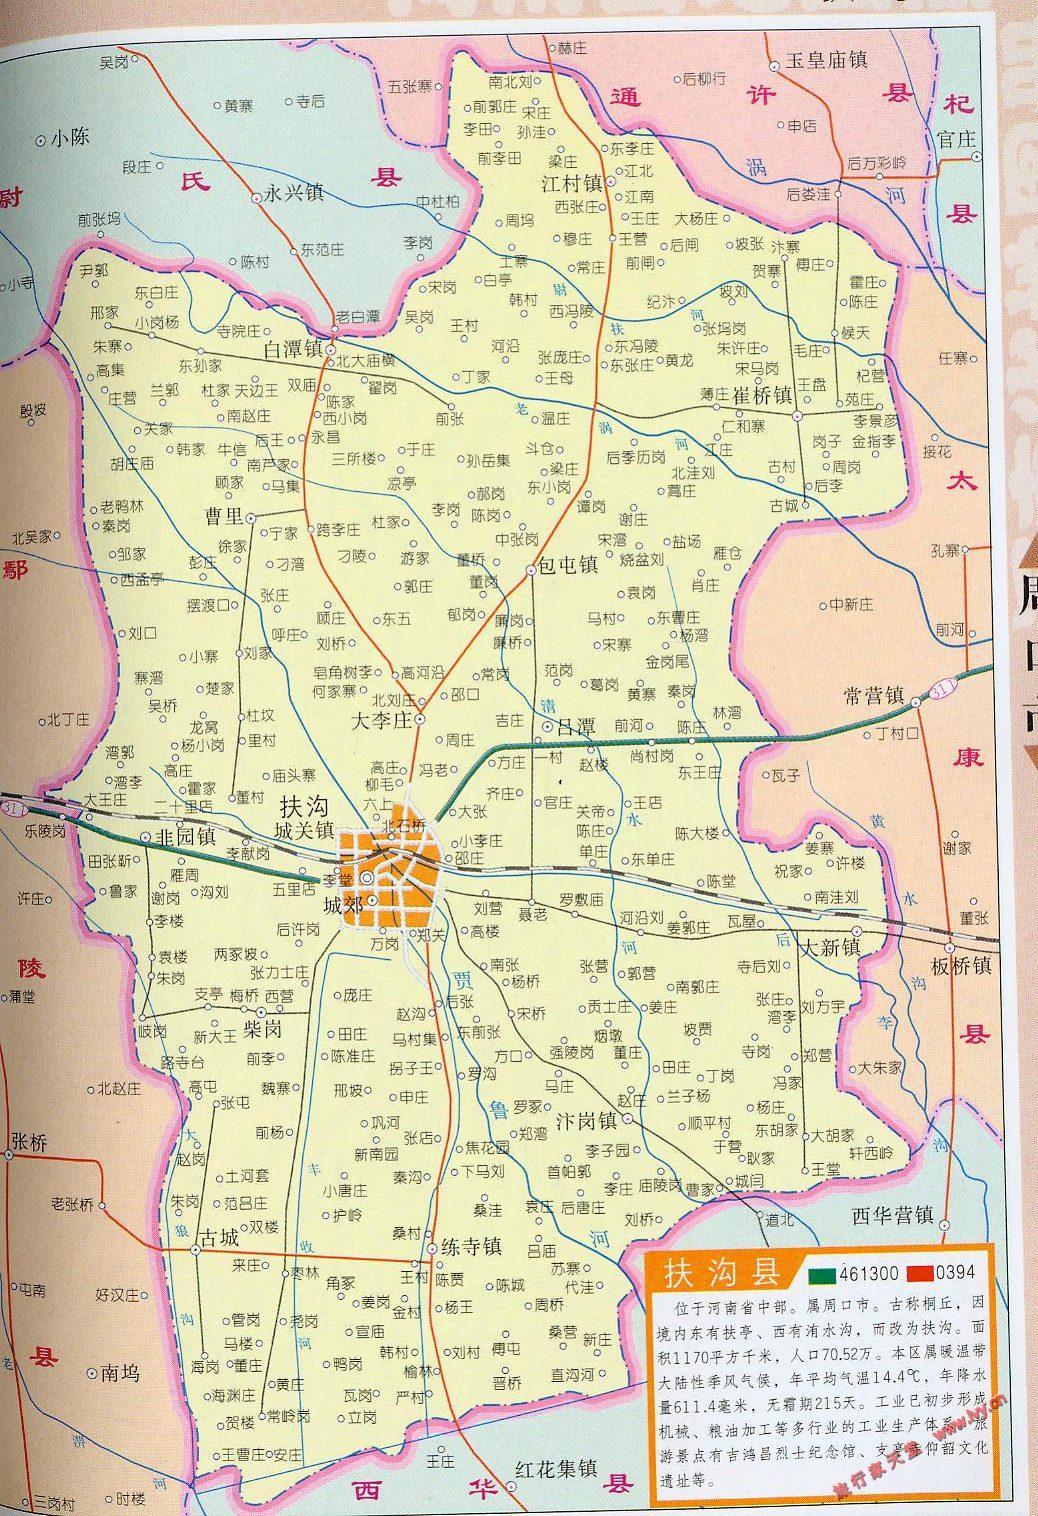 扶沟县乡镇划分地图图片